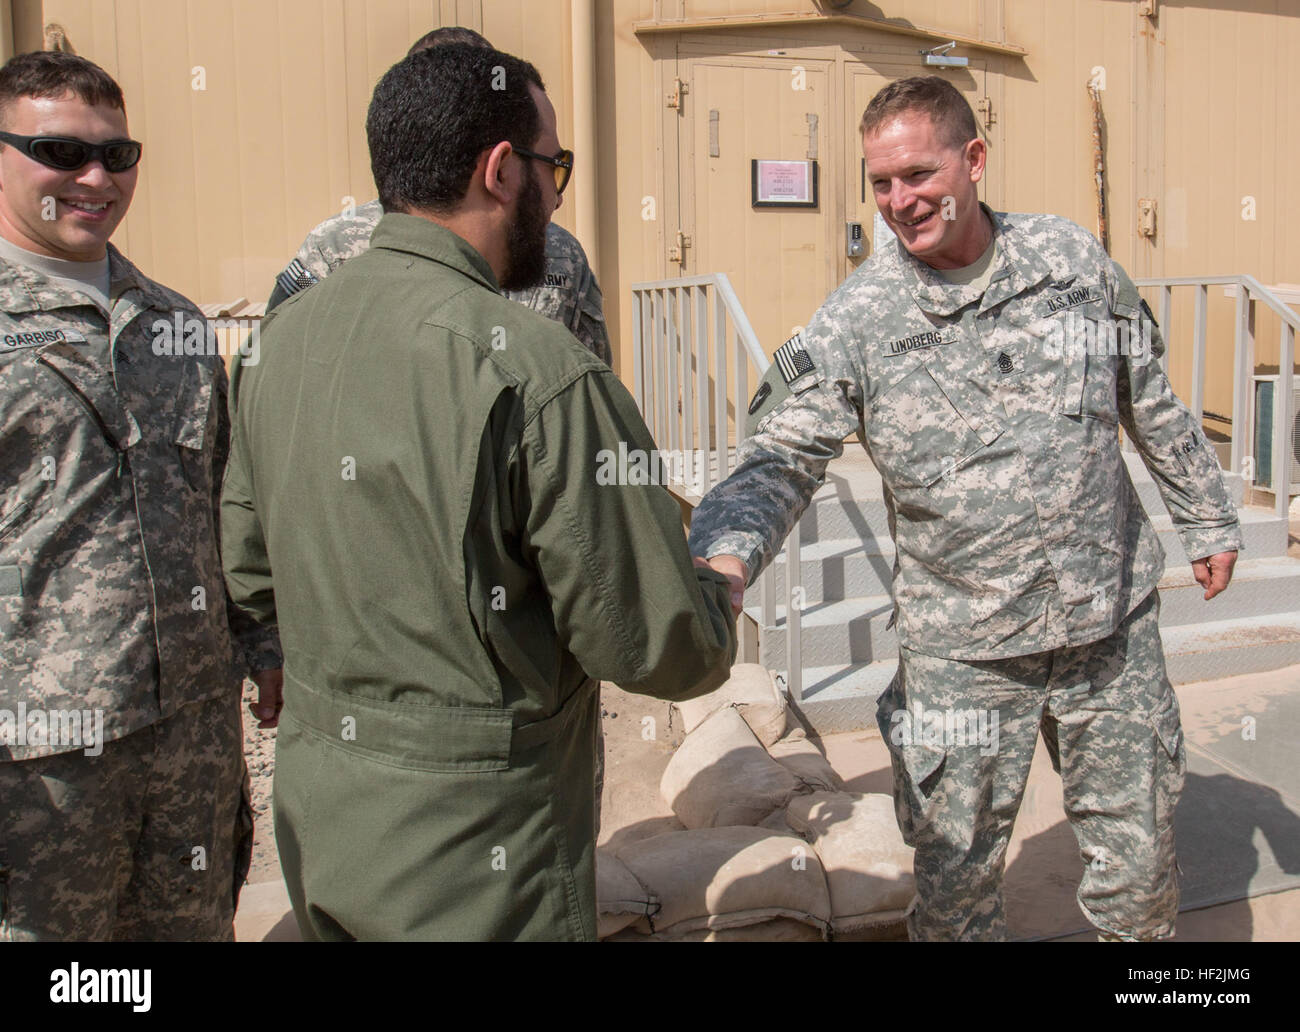 Wakil Awal Saleh Al Enezi, le chef d'équipe senior s'engage sur la visite avec l'armée de l'air koweïtienne section de recherche et de sauvetage, rencontre le Sergent Commande Le Major Jeffrey Lindberg, le sergent-major de commandement de 2/147ème bataillon d'hélicoptères d'assaut, au cours d'une visite de partenariat le 14 octobre 2014, au Camp Buehring, le Koweït. Trois chefs d'équipage de la force aérienne koweïtienne visiter le Camp Buehring à voir un UH-60 Black Hawk, une évacuation médicale Black Hawk, et la base elle-même. (Minnesota Army National Guard photo de la CPS. Jess Nemec/relâché), l'aviation américaine du Koweït vers un partenariat de travail 141014-Z-OX391-020 Banque D'Images